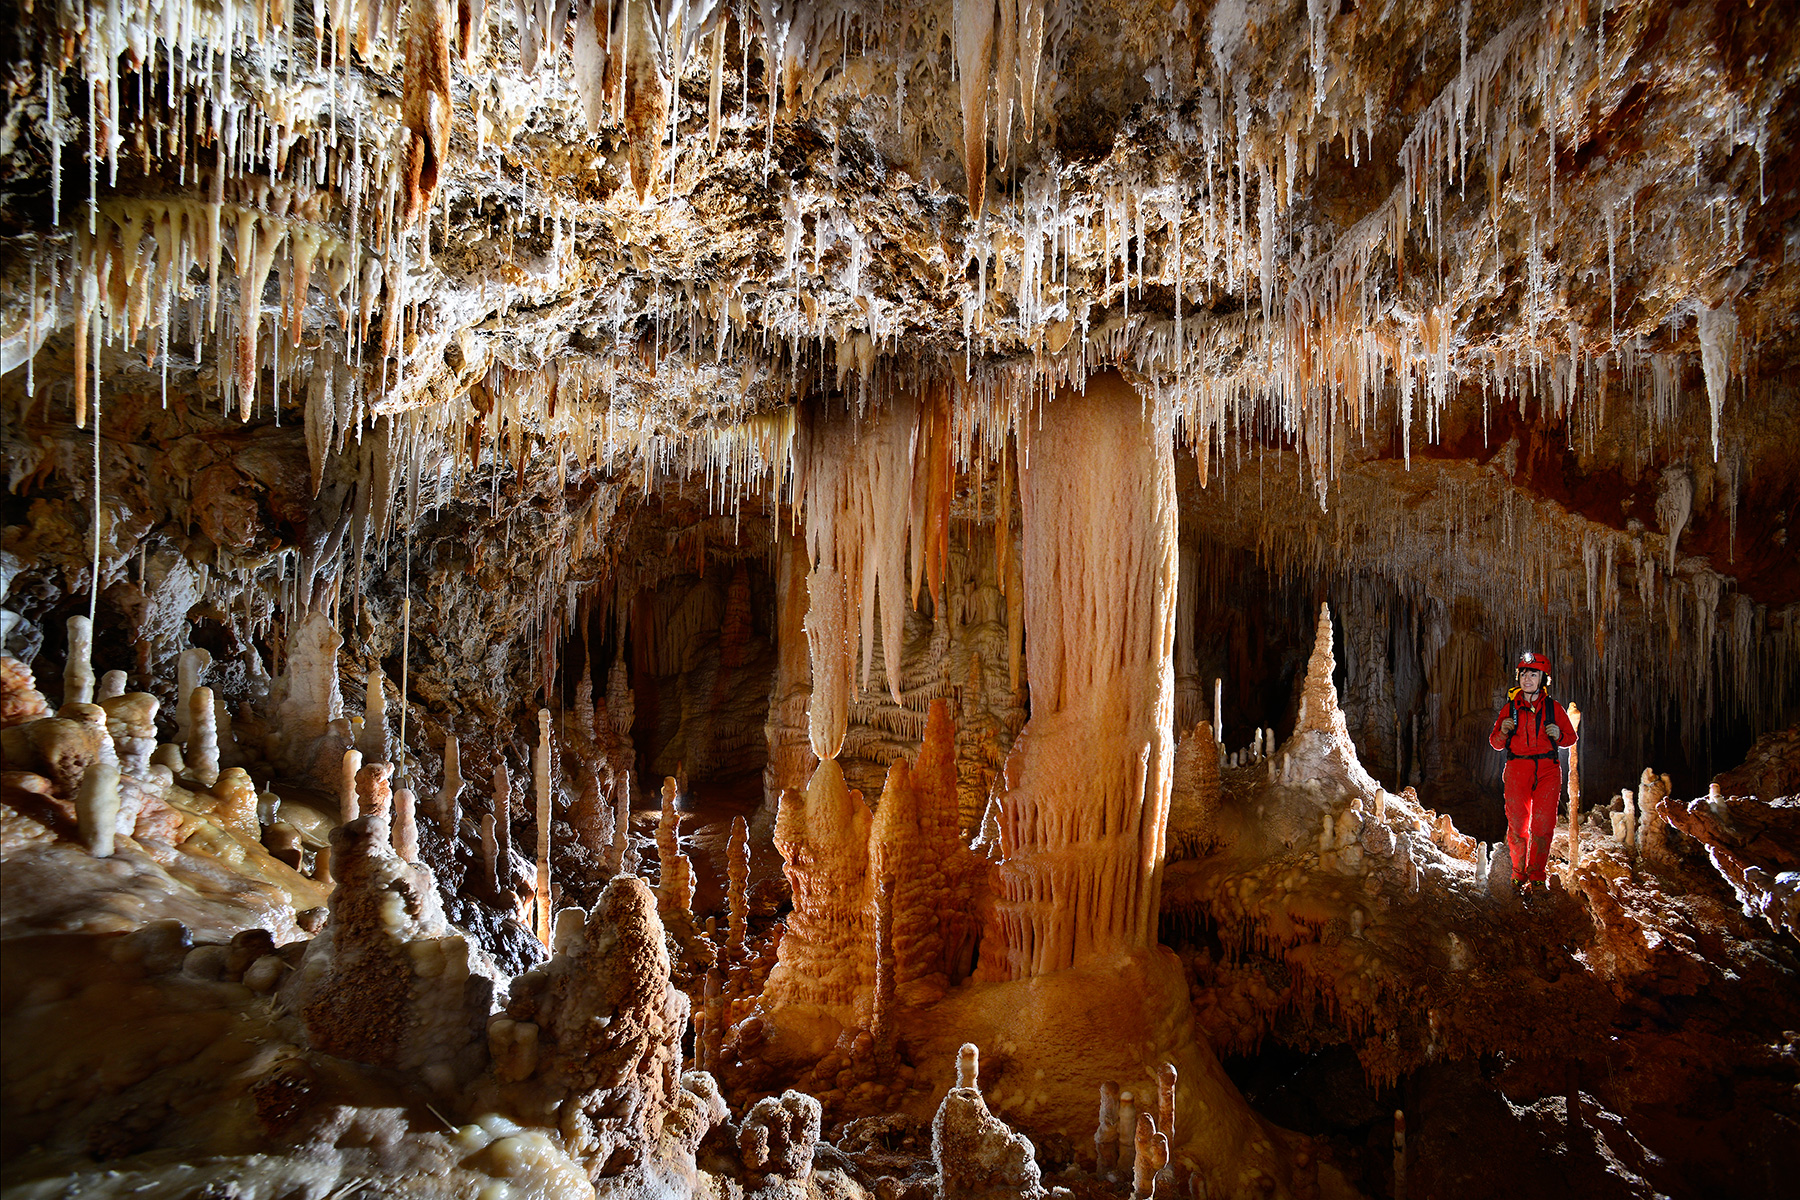 Grotte de Clamouse : Galerie concrétionnée avec gros pilier au centre (spéléo perché sur le côté).